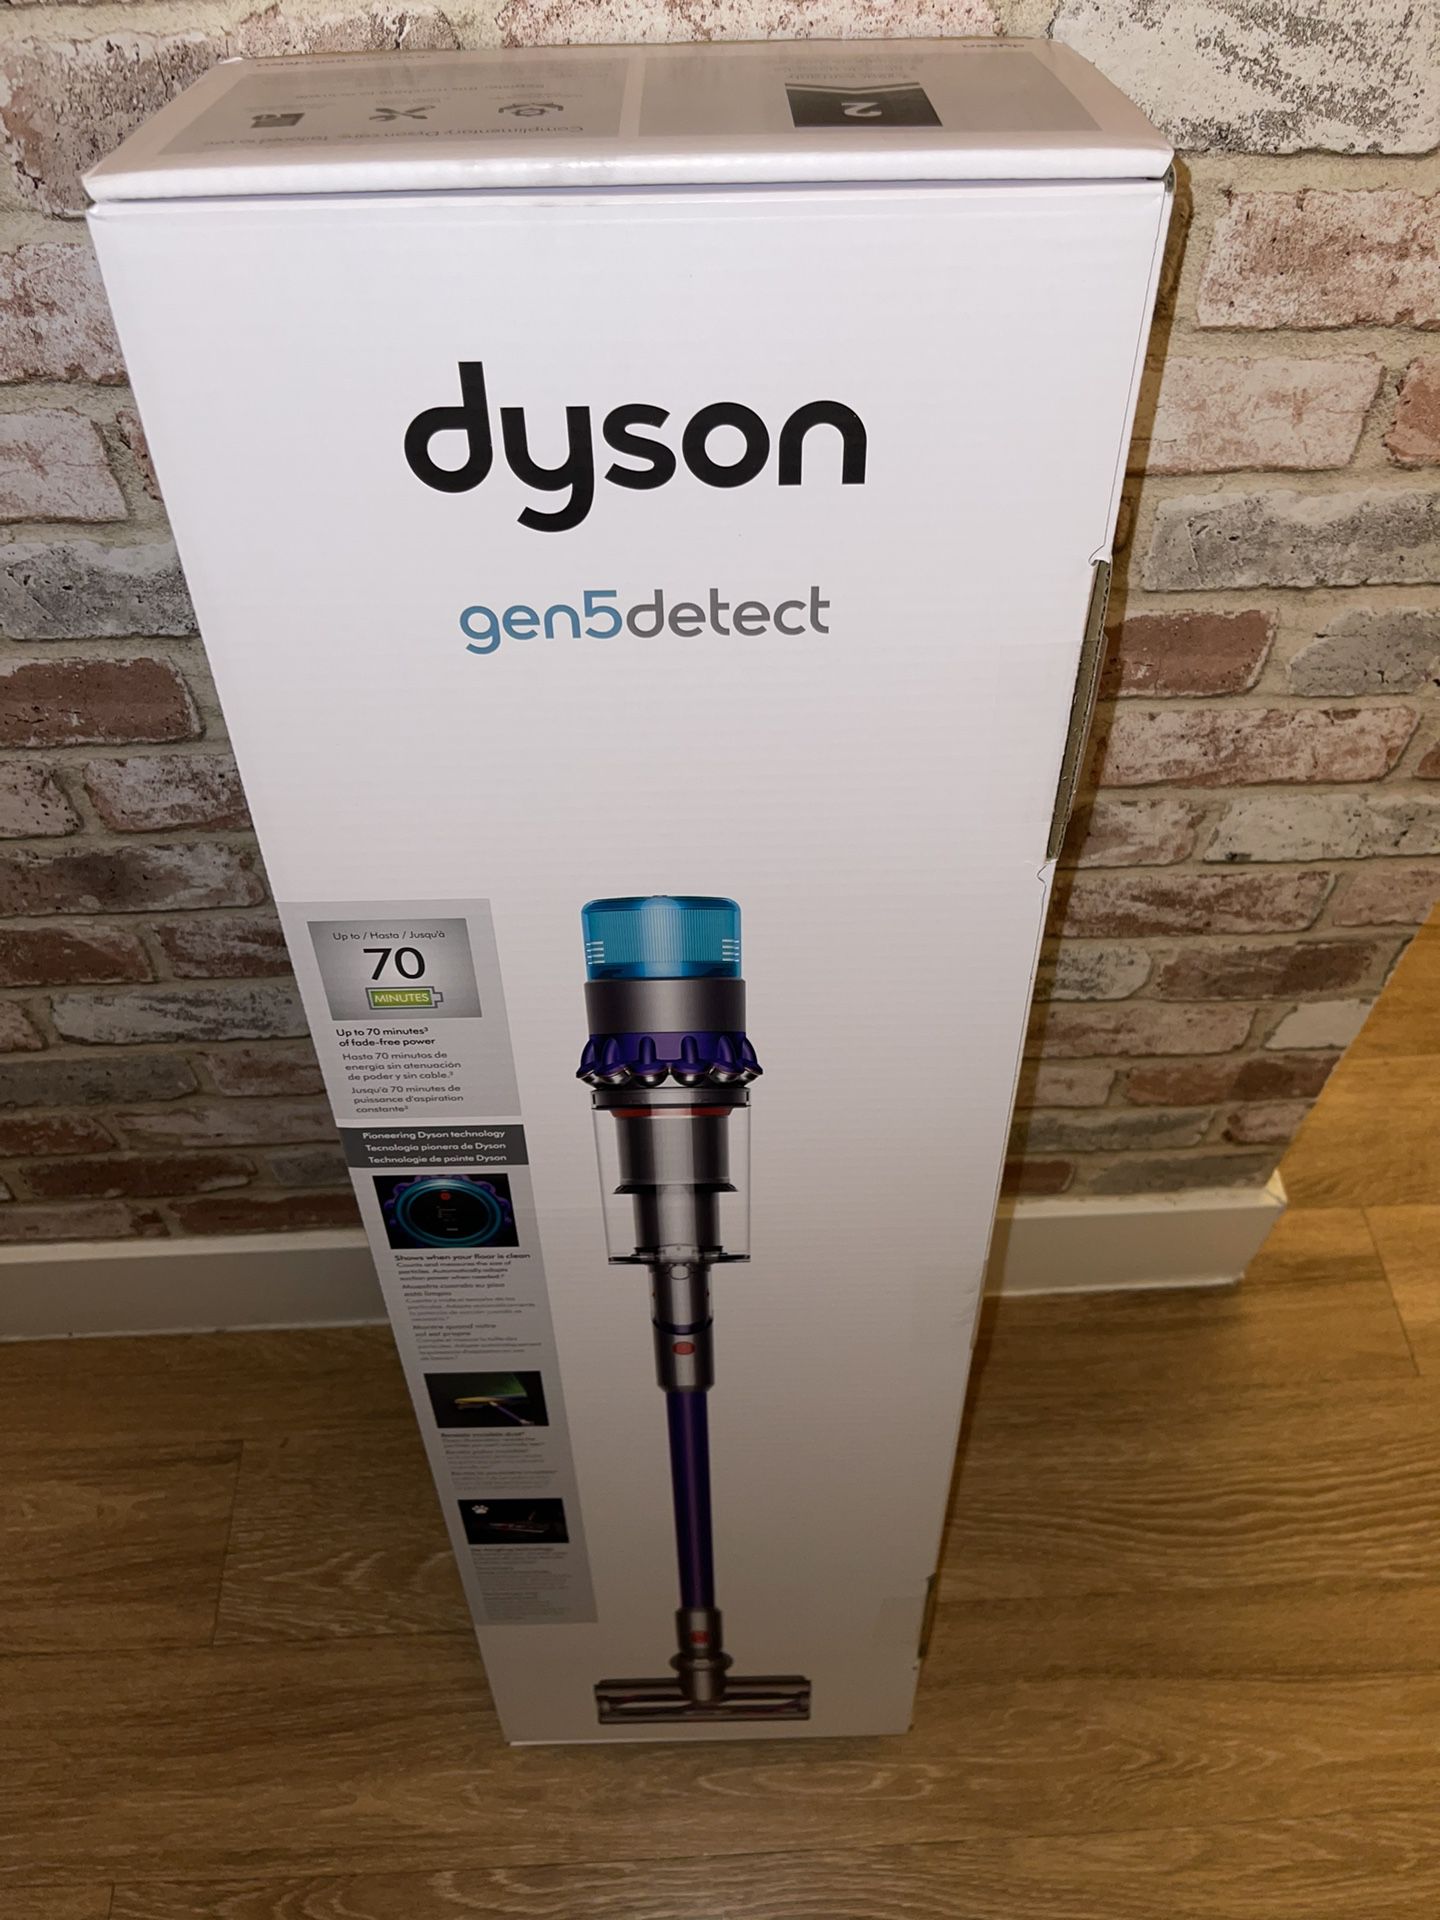 New Dyson gen5detect